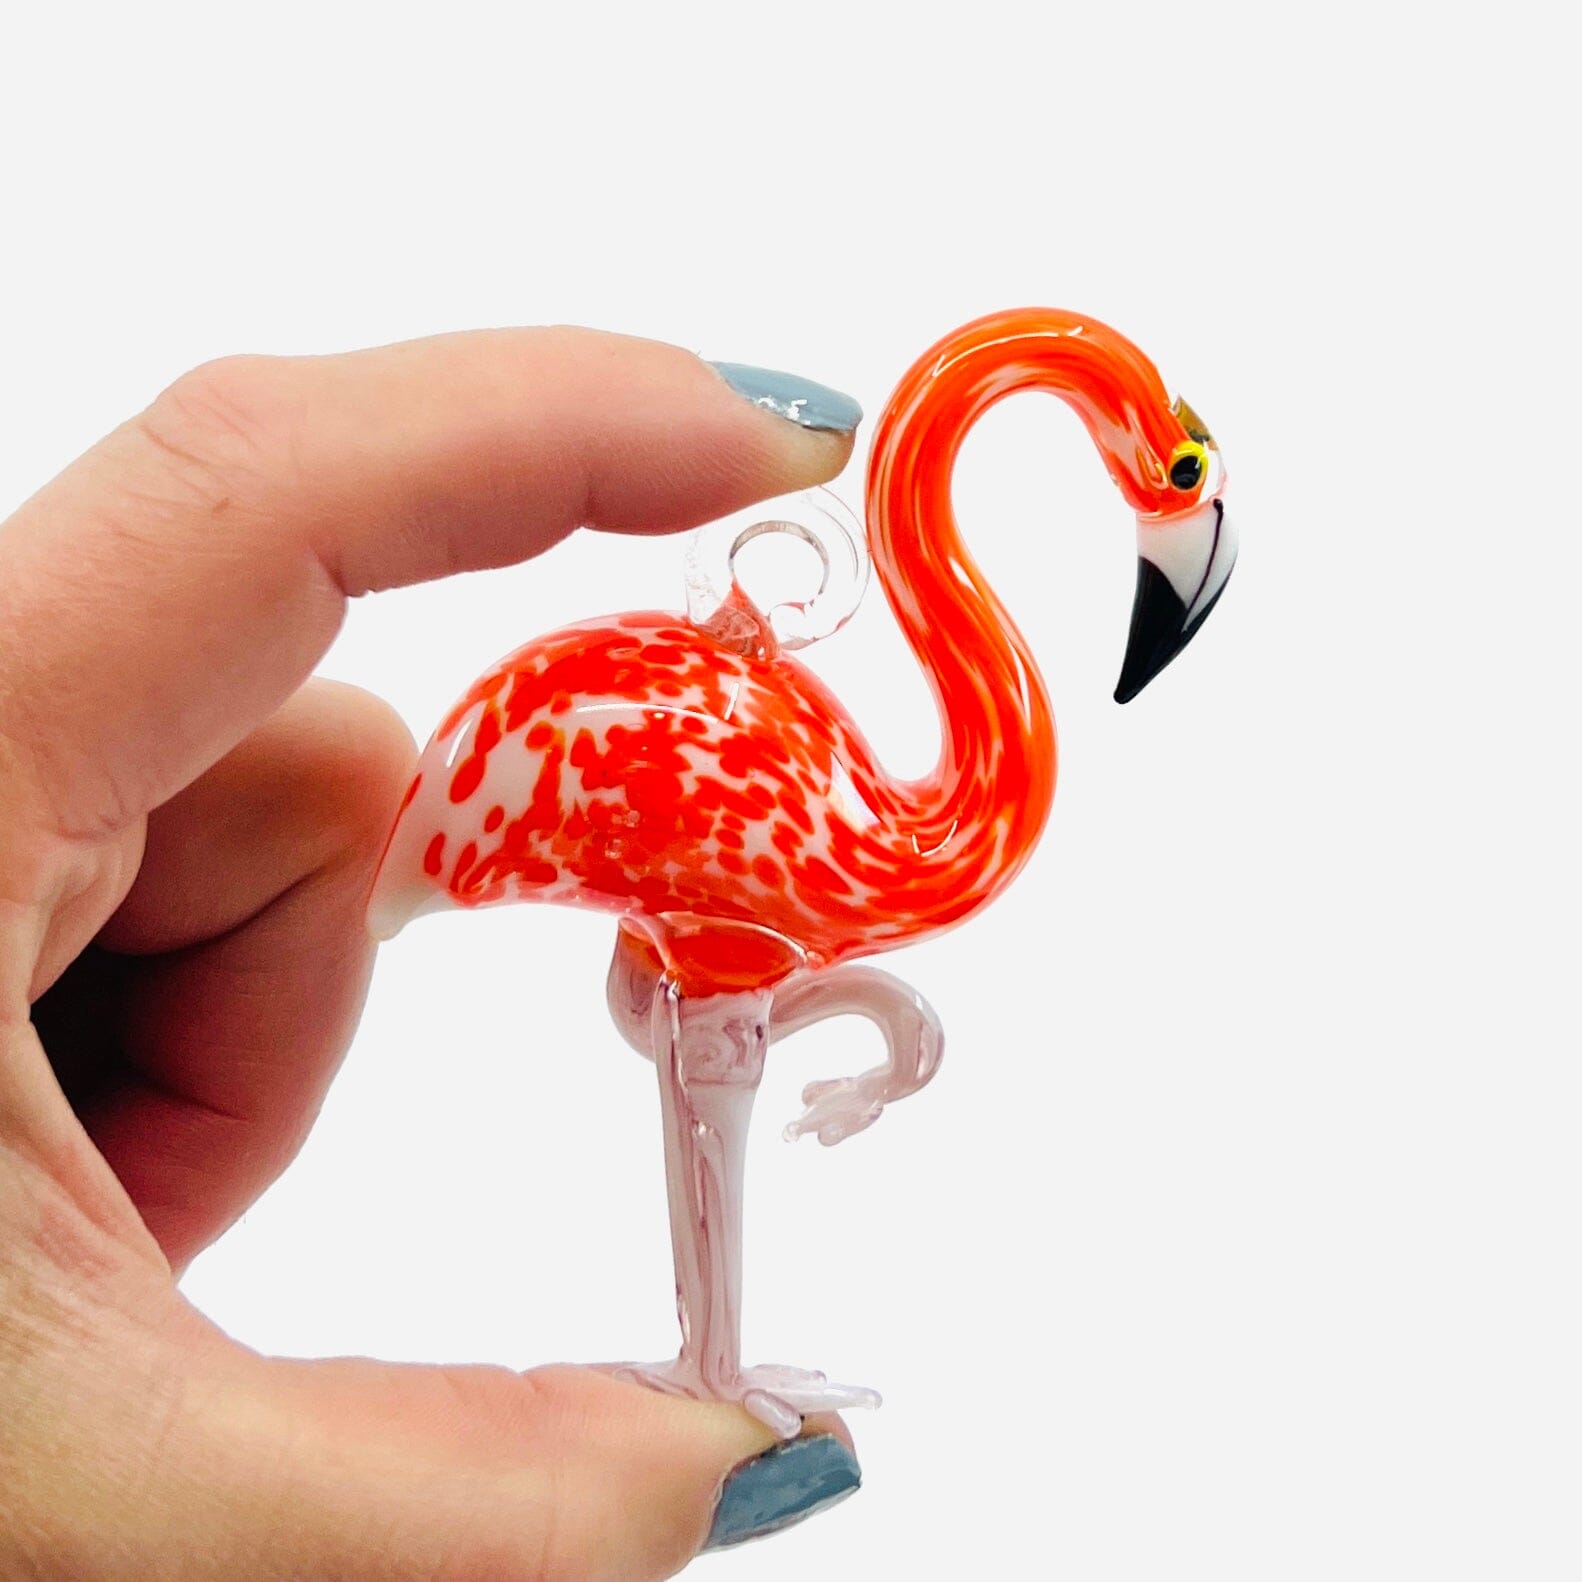 Coral Pink Flamingo Ornament Miniature - 